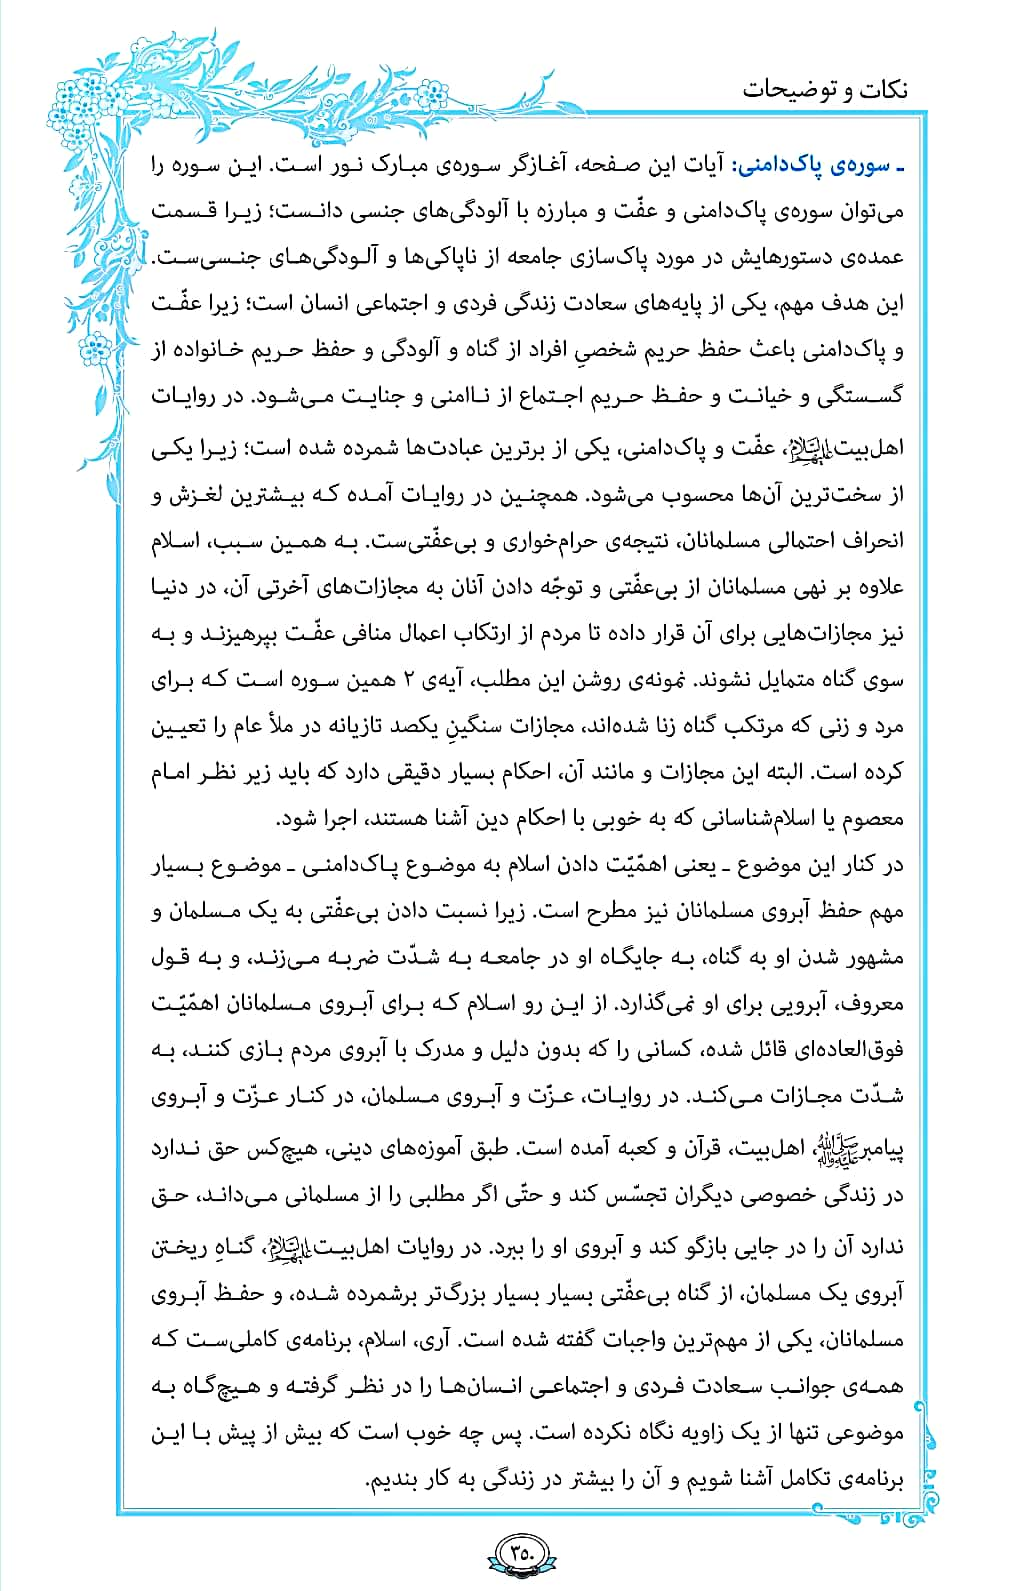 درباره پاکدامنی در صفحه 350 قرآن بخوانید + فیلم، متن و مفاهیم 3